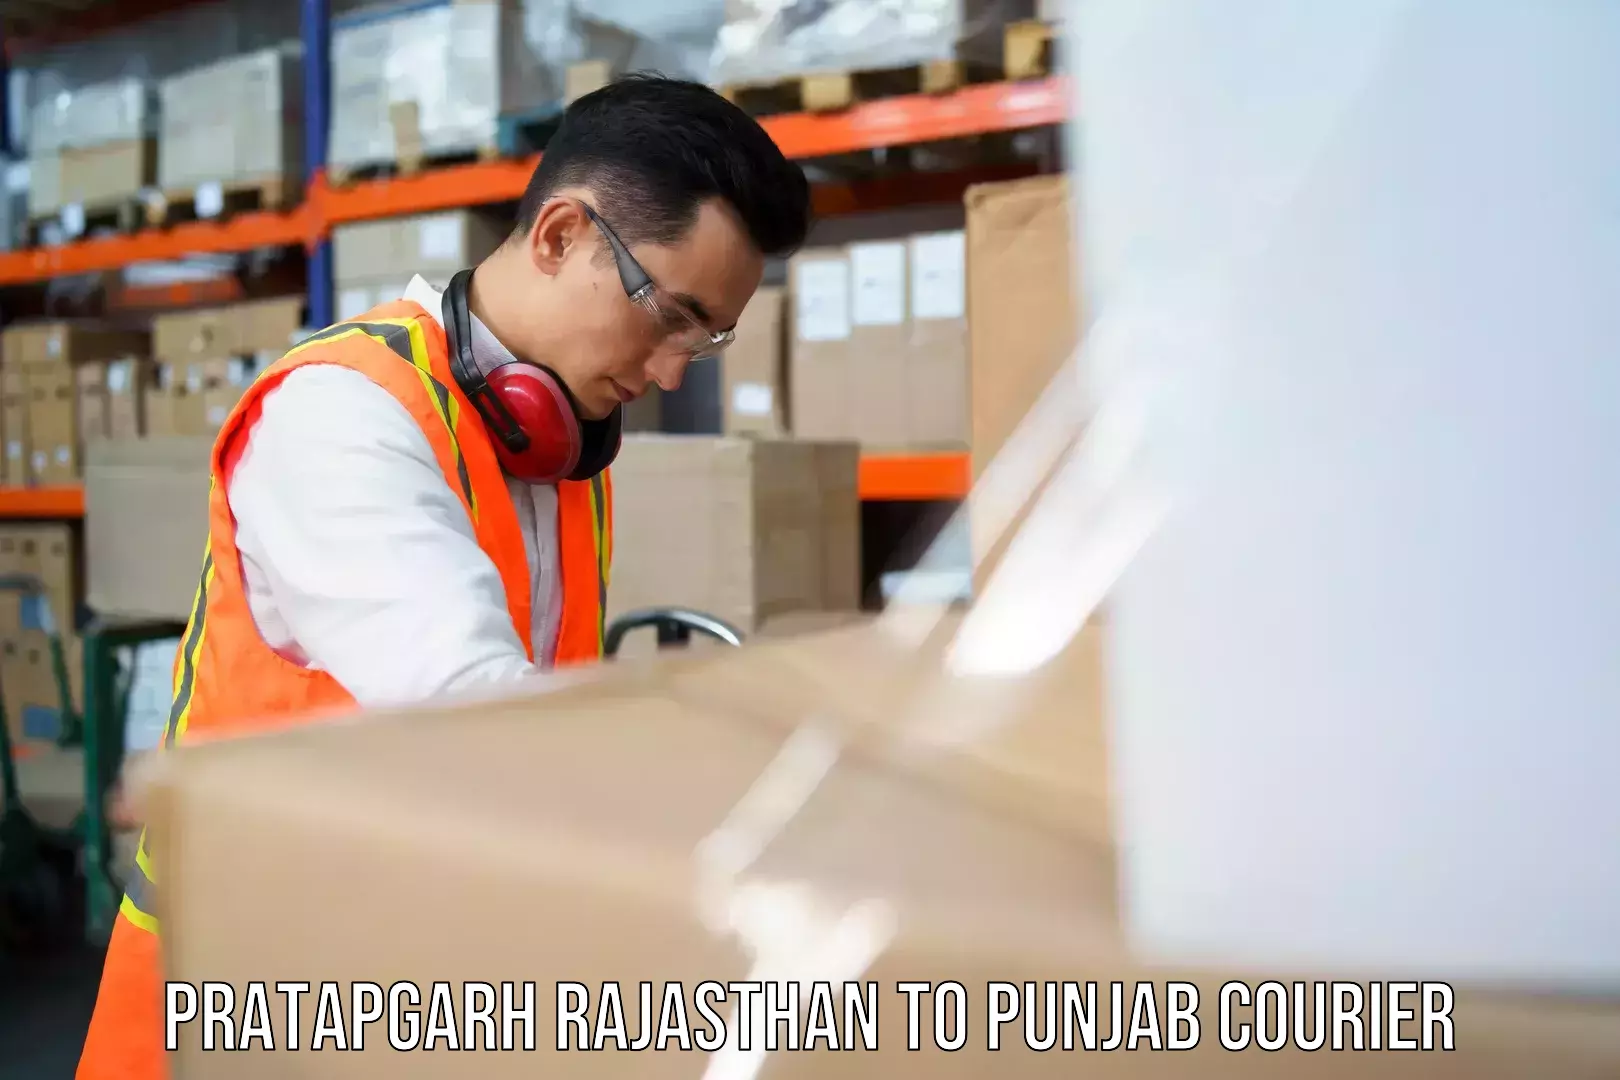 Cargo courier service Pratapgarh Rajasthan to Punjab